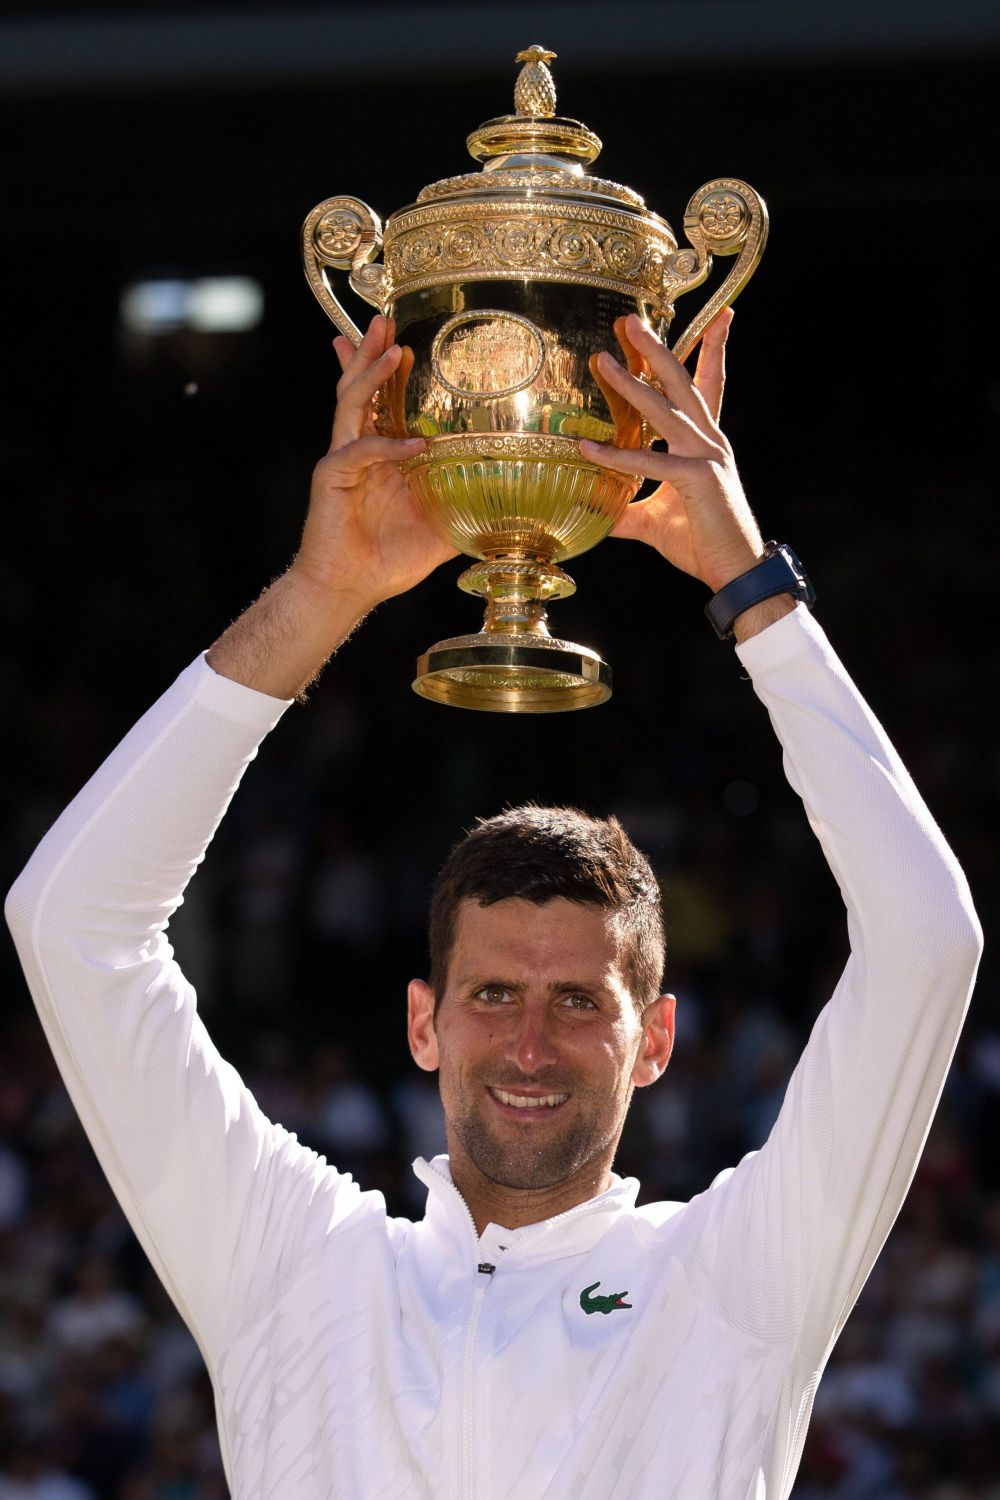 Ediția trecută l-au trimis acasă, acum îi pun covorul roșu lui Djokovic. "Îi urăm bun venit în Australia!"_4